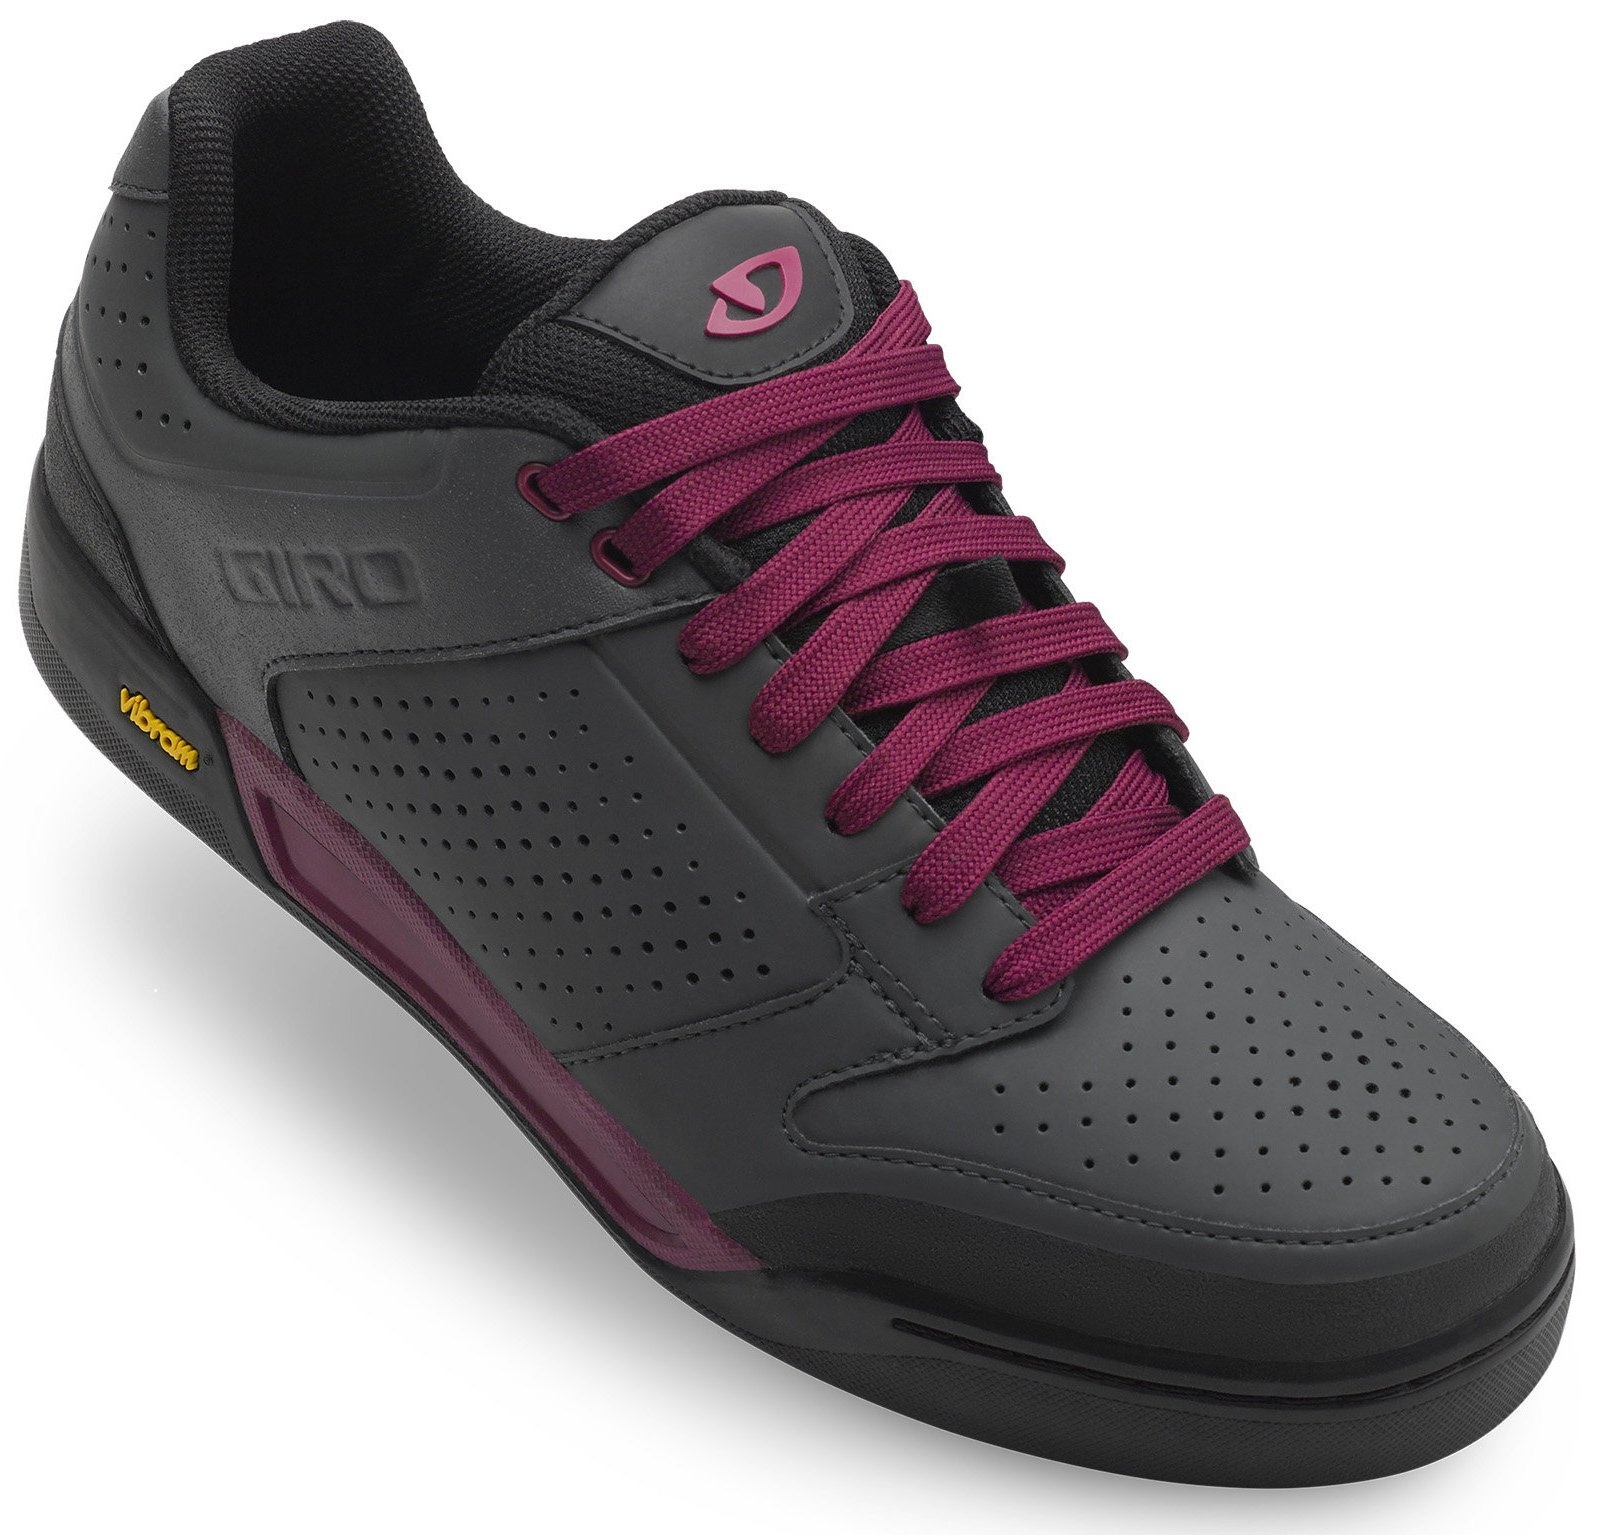 Giro Sko Riddance W Dame Sort/lilla » Shoe Size: 43